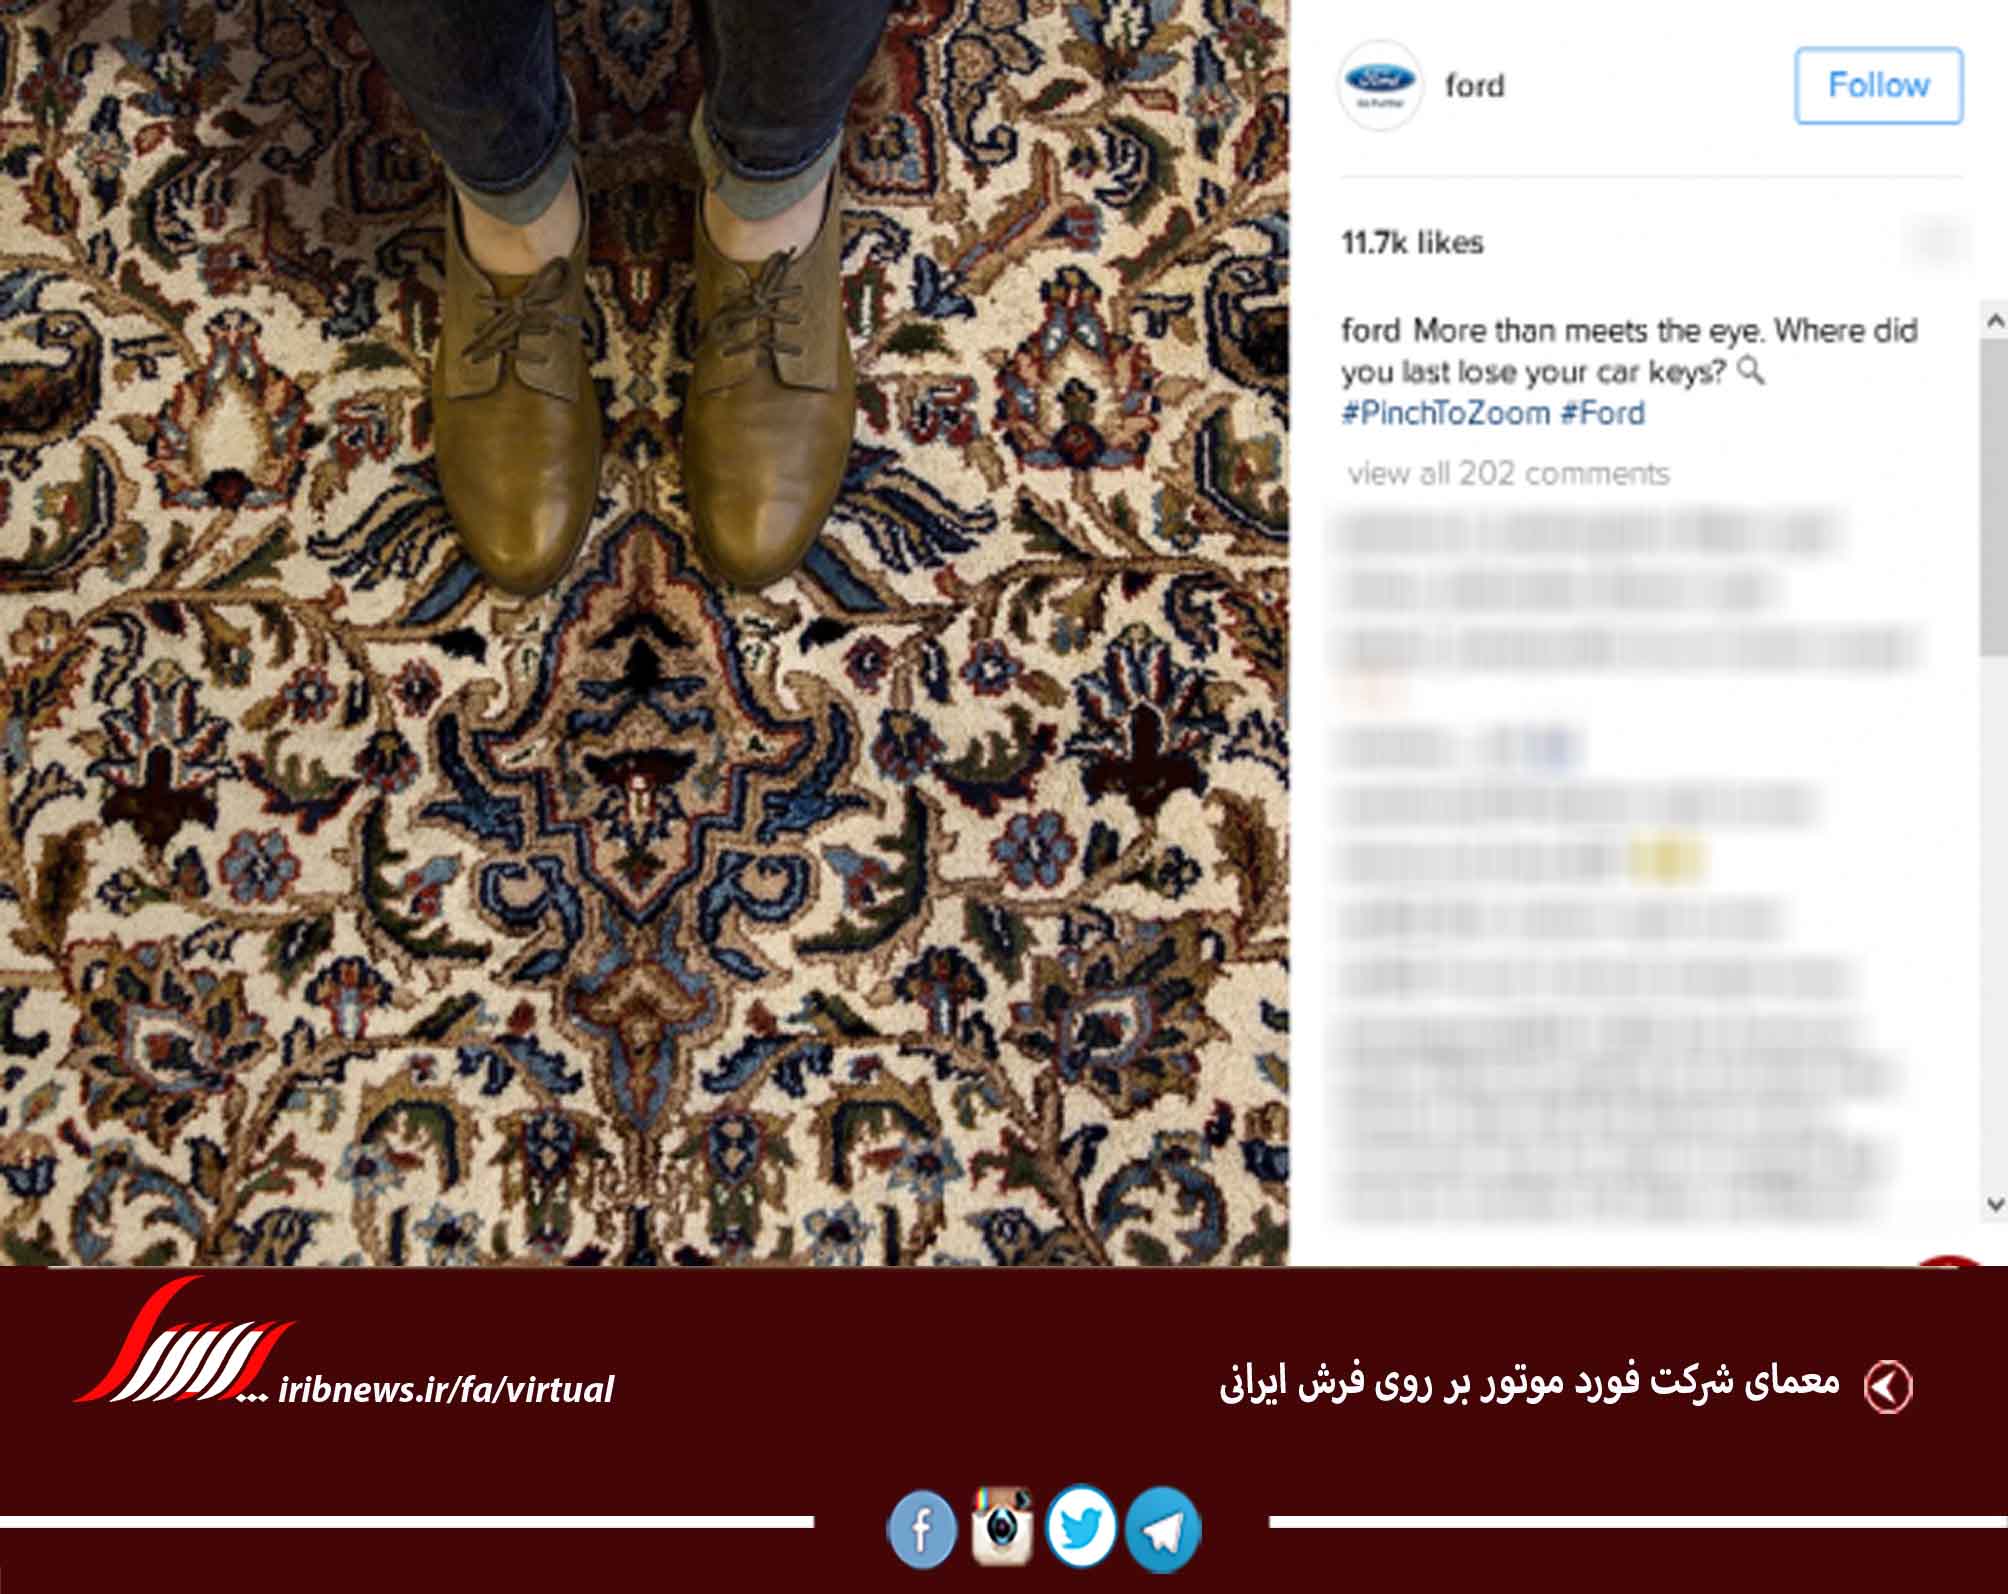 معمای شرکت فورد موتور بر روی فرش ایرانی